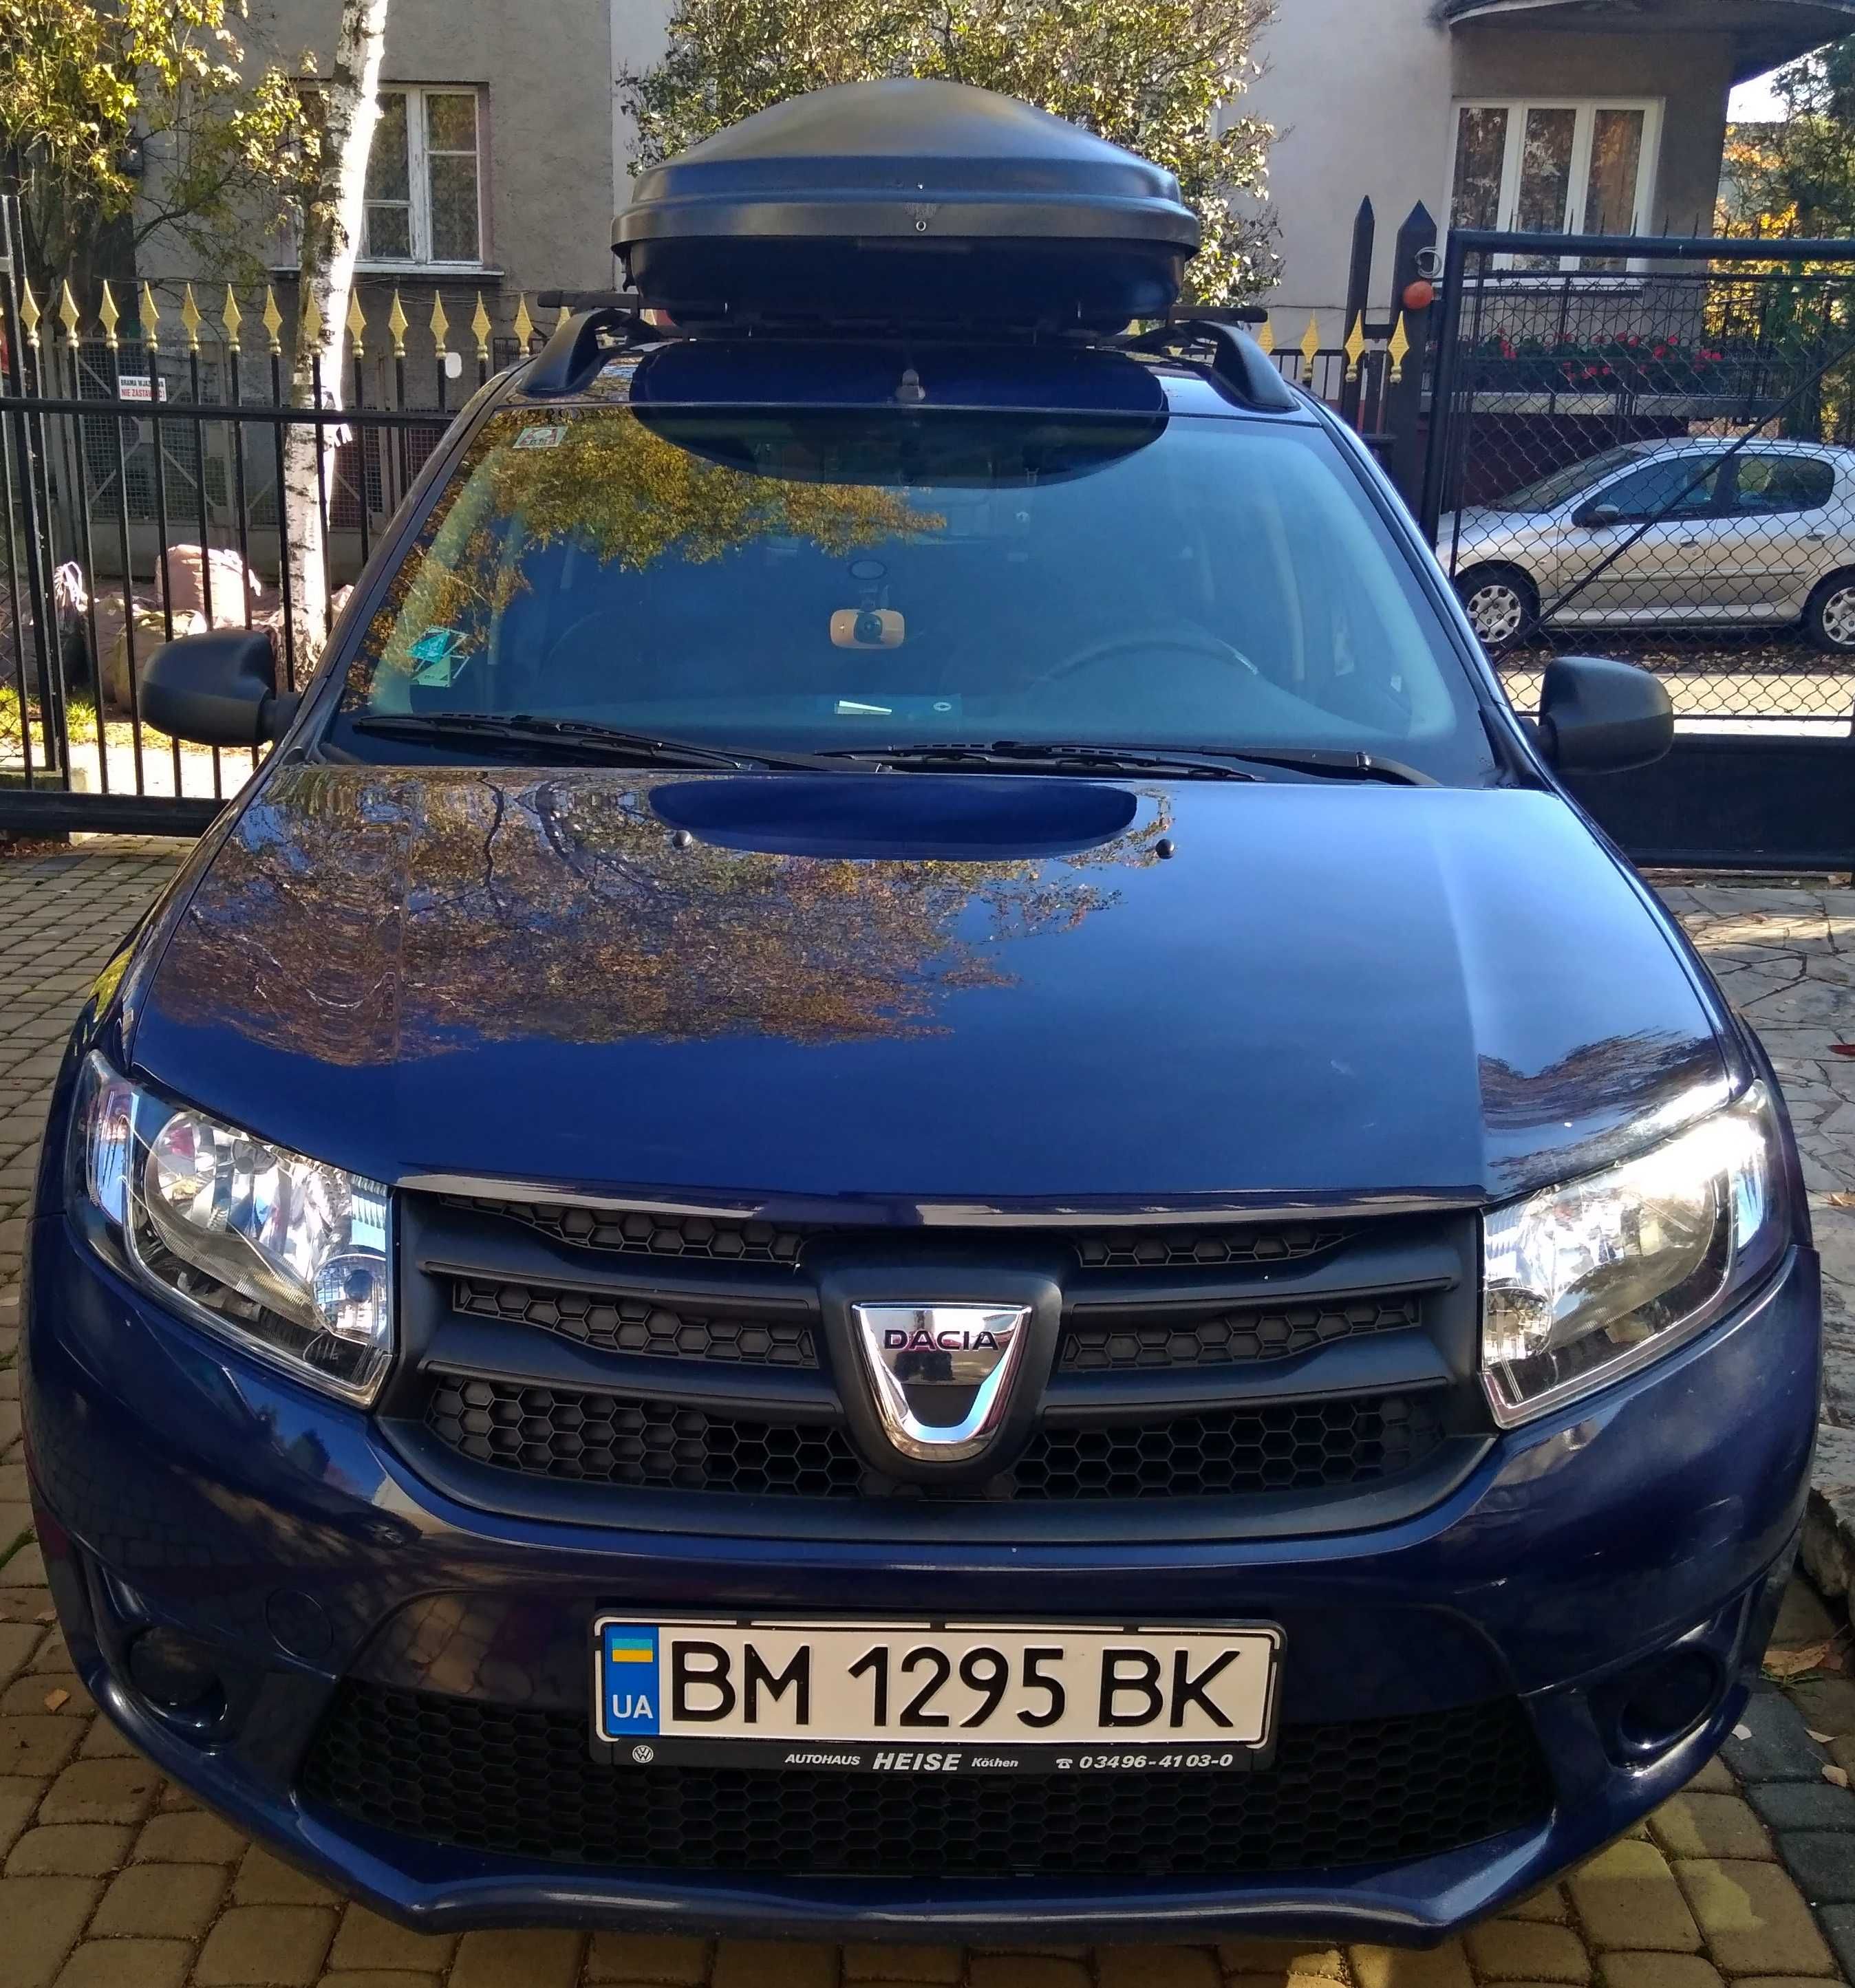 Автомобиль Dacia Logan MCV  2014г выпуска